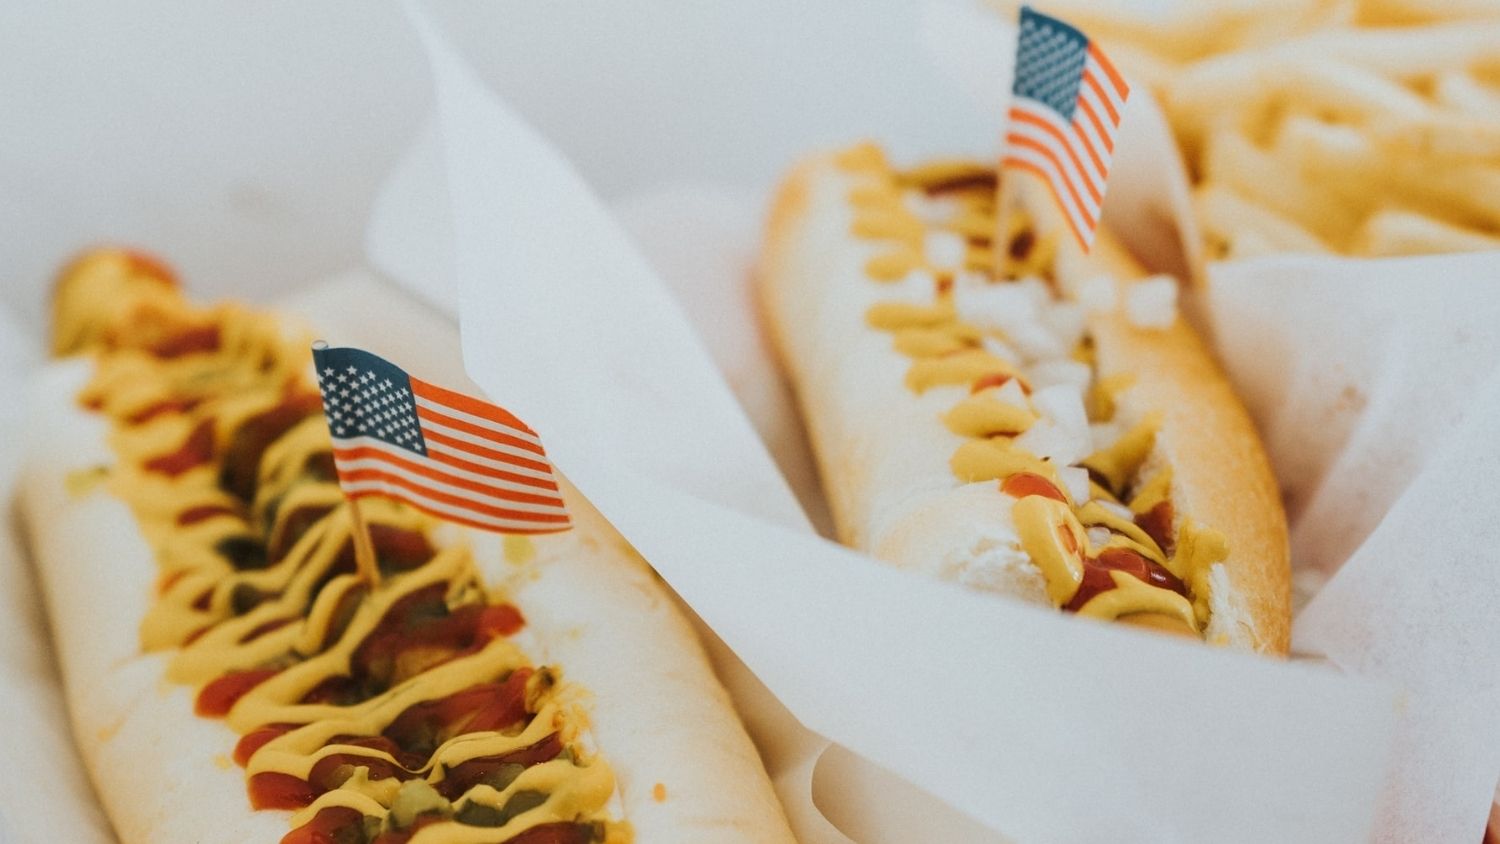 热狗和美国国旗装饰。